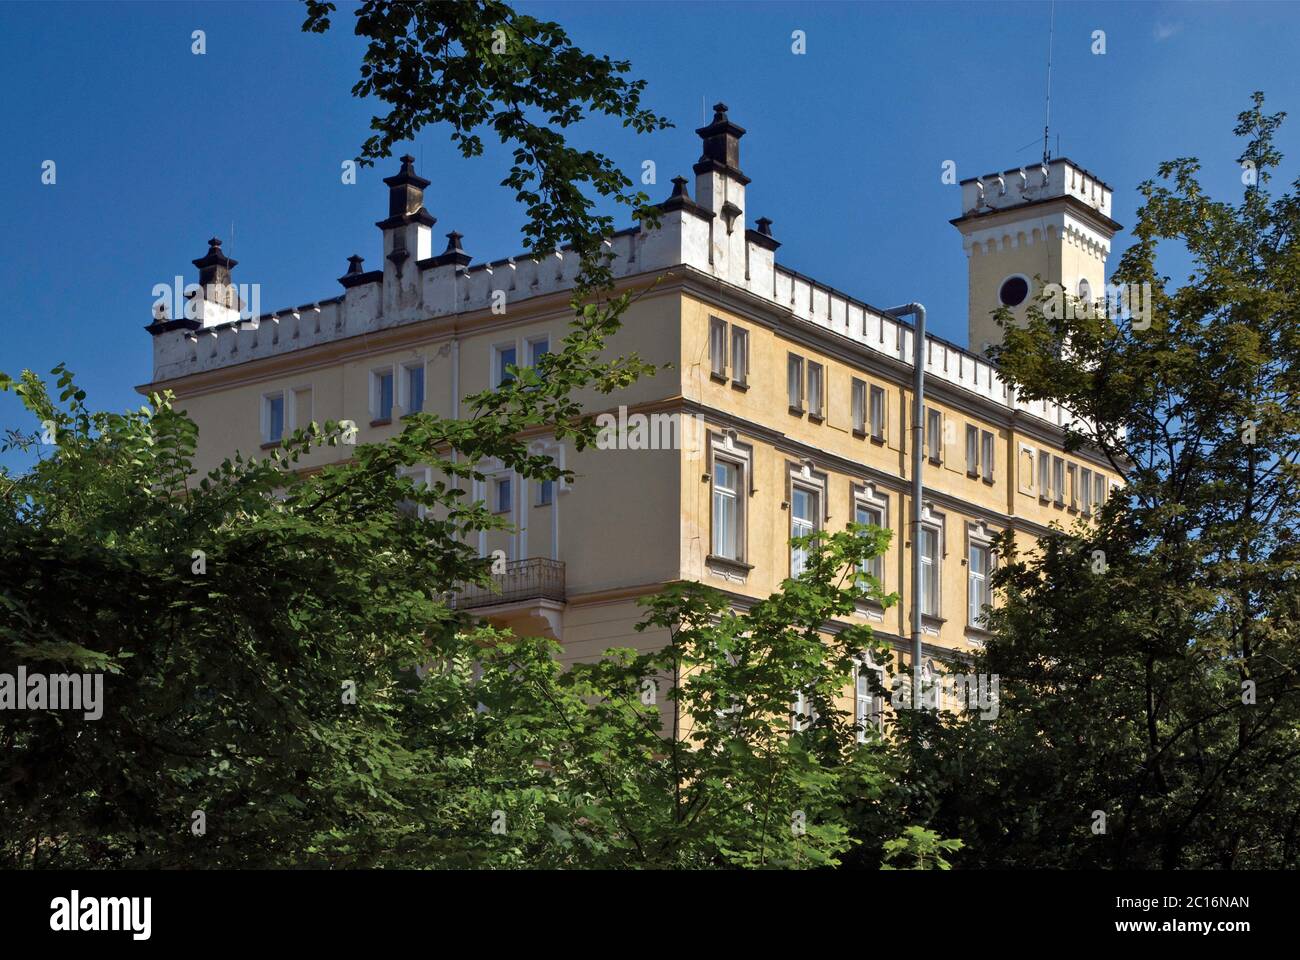 Hotel Stekl vicino al castello di Hruba Skala nella zona di Český ráj a Liberecky kraj (Regione Liberec), Repubblica Ceca Foto Stock